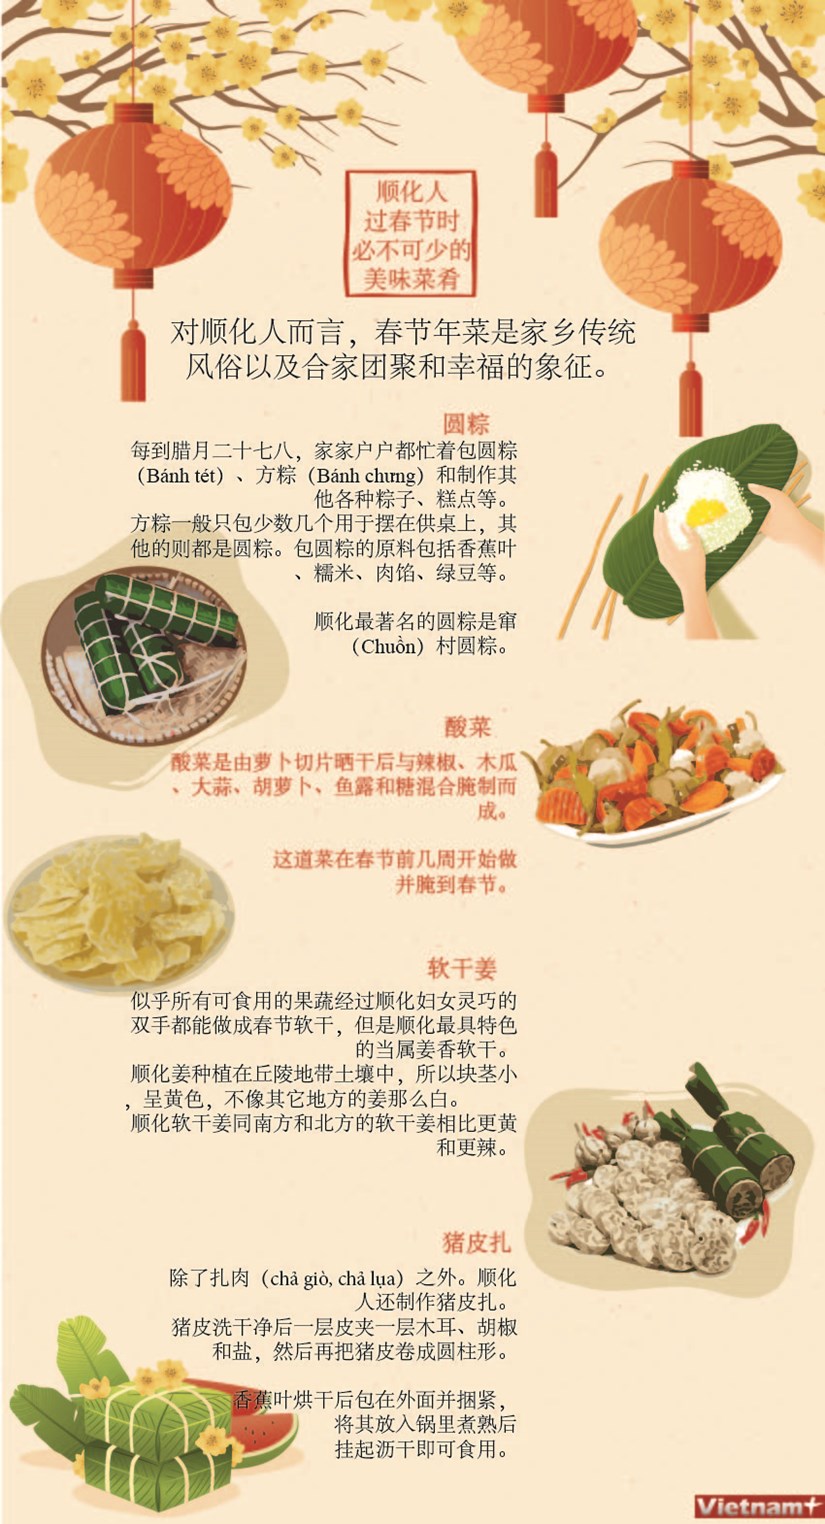 图表新闻：顺化人过春节时必不可少的美味菜肴 hinh anh 1